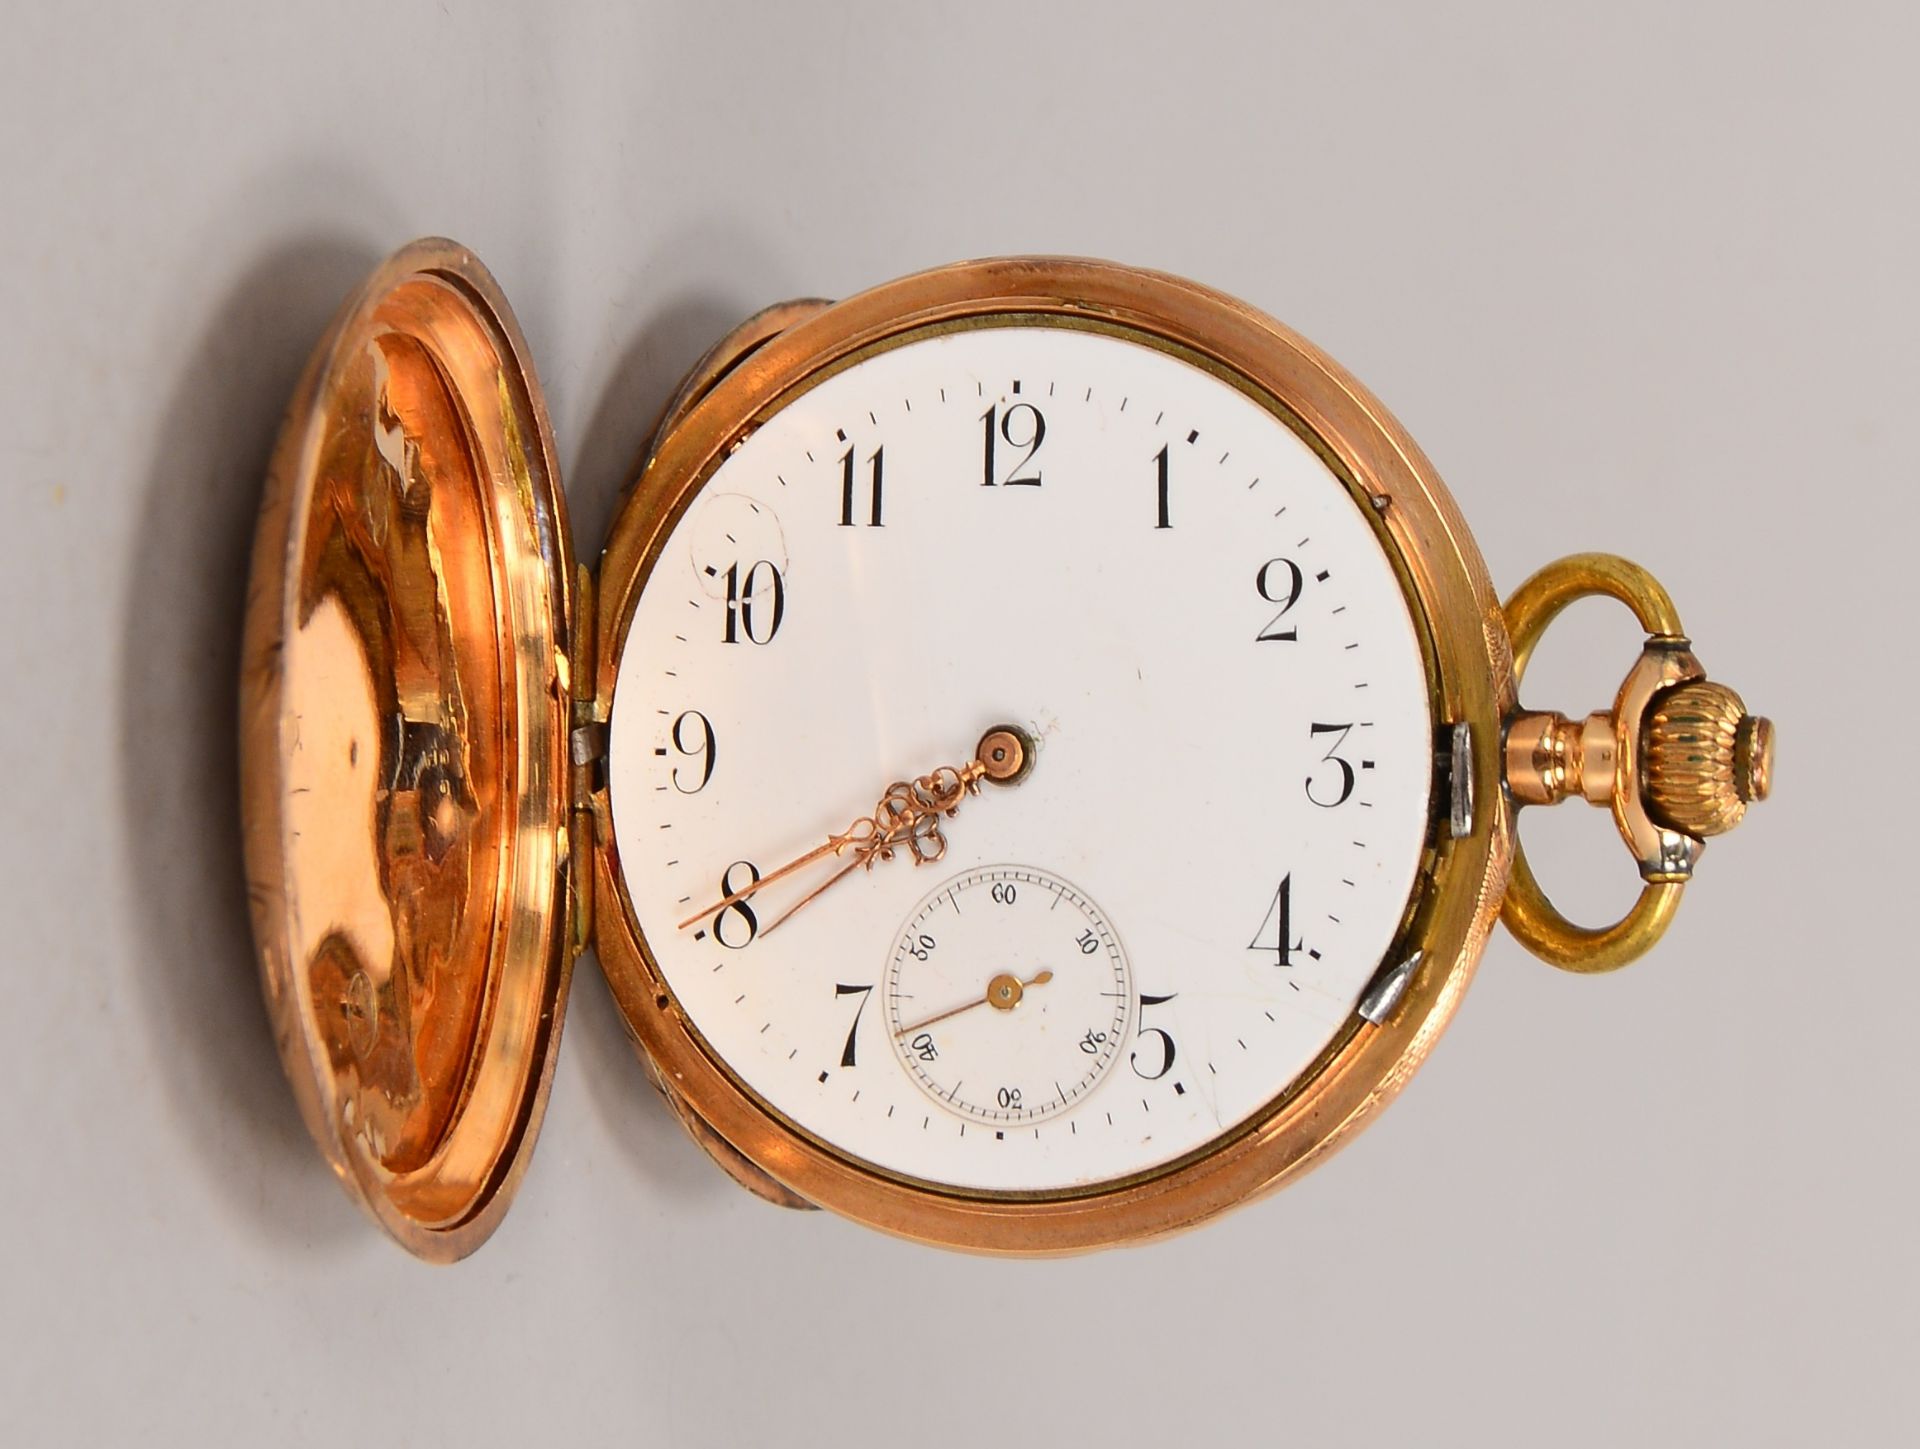 Taschenuhr, 585 RG, zwei Deckel Gold, Ringhandhabe aus Messing, ohne Glas Durchmesser 5 cm, Gewicht